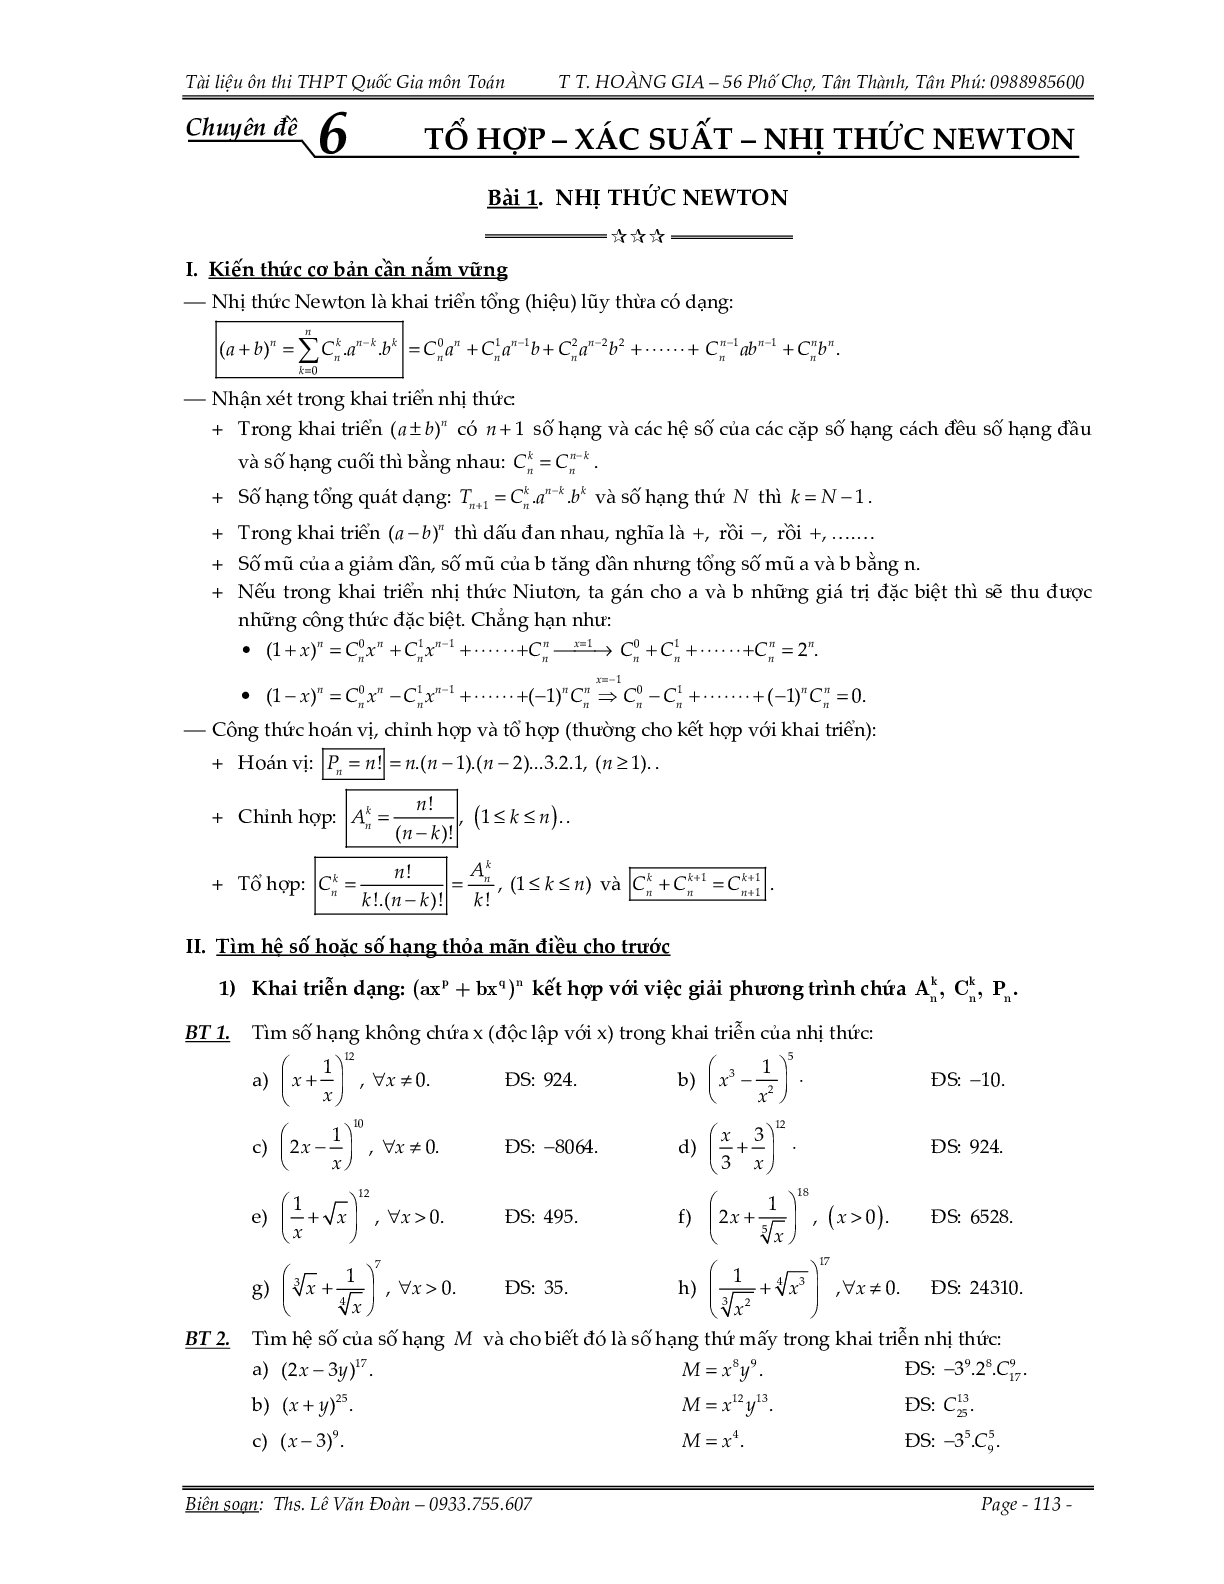 150 bài toán nhị thức Newton và xác suất (trang 1)